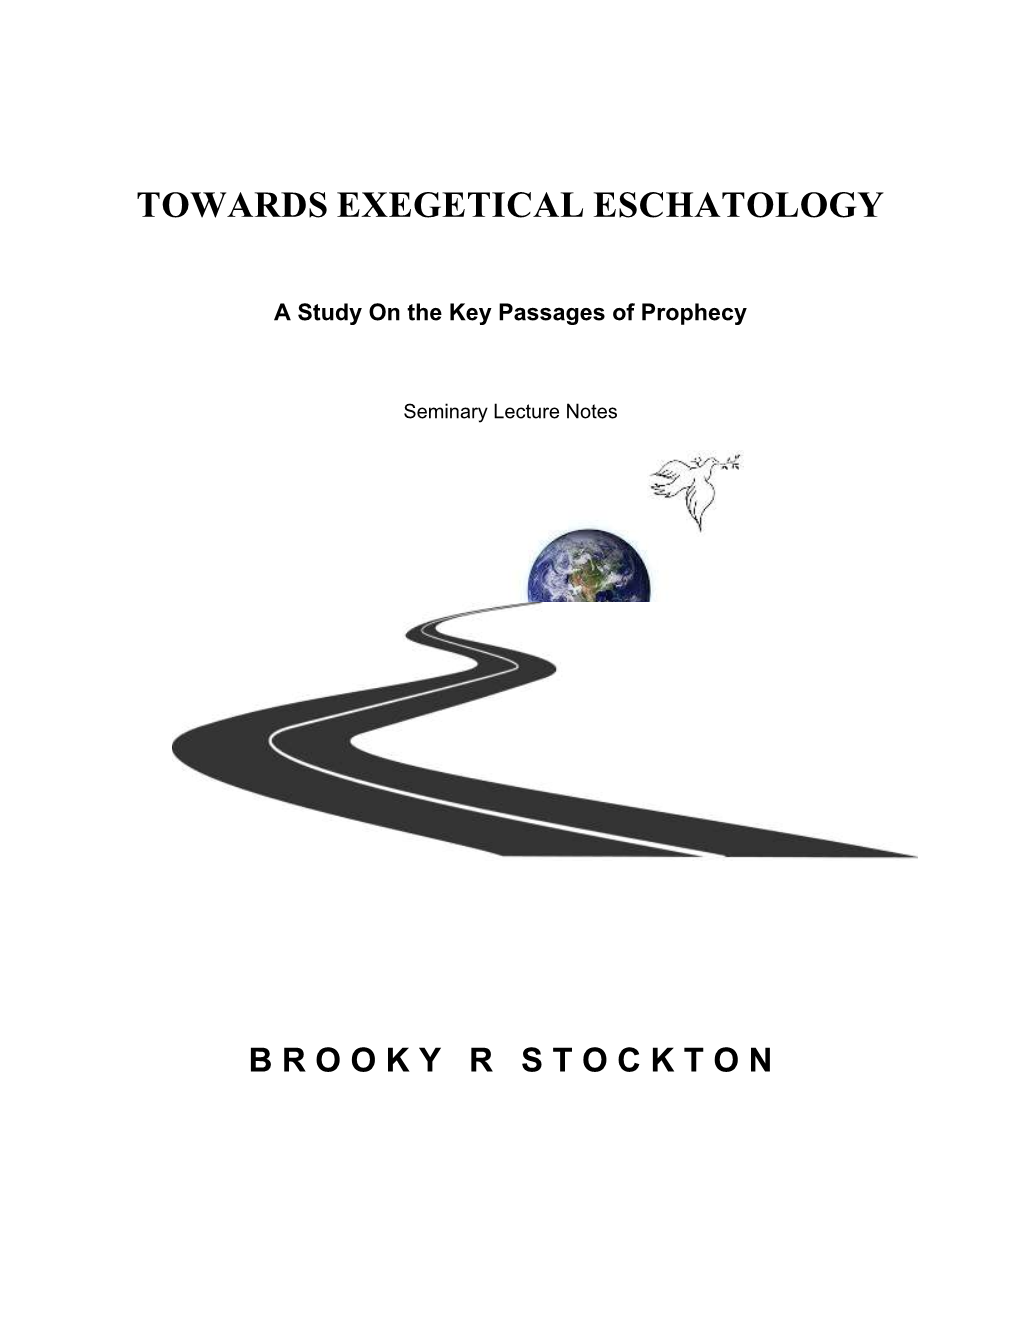 Towards Exegetical Eschatology